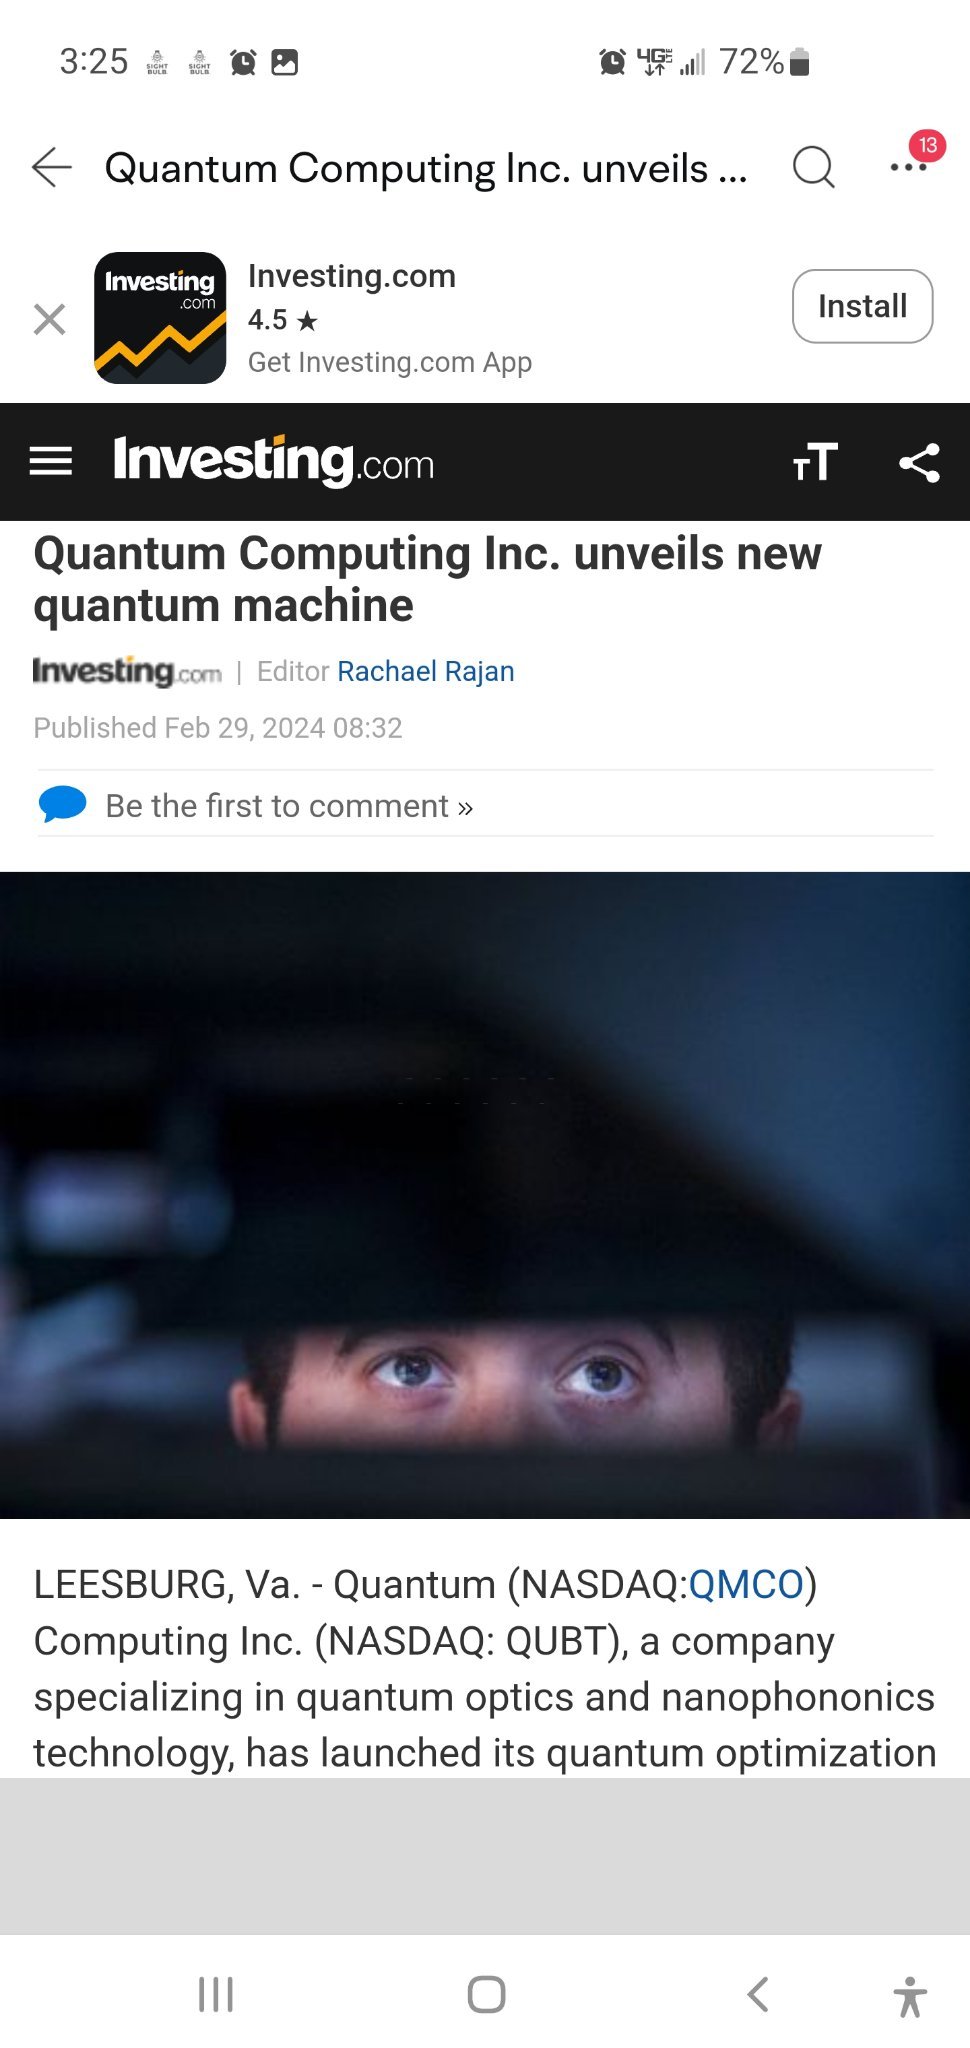 $クオンタム コンピューティング (QUBT.US)$ FYI....実際に機能する画期的な量子コンピューティング関連のテクノロジーです！